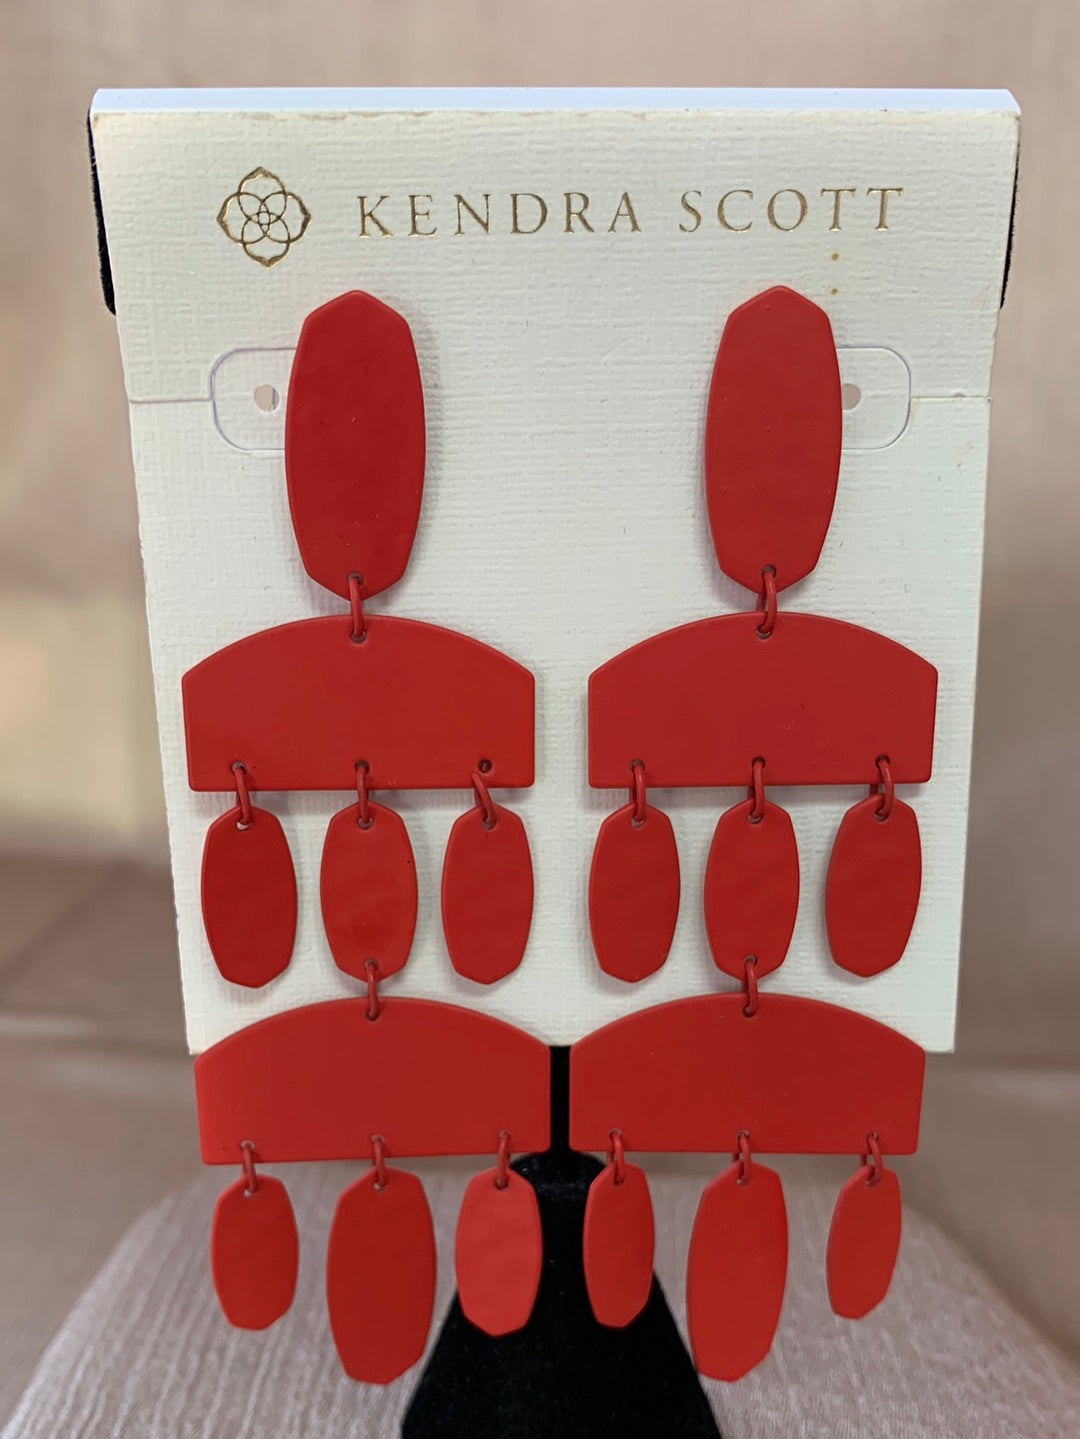 Kendra Scott Cristina Statement Earrings Red Tassels